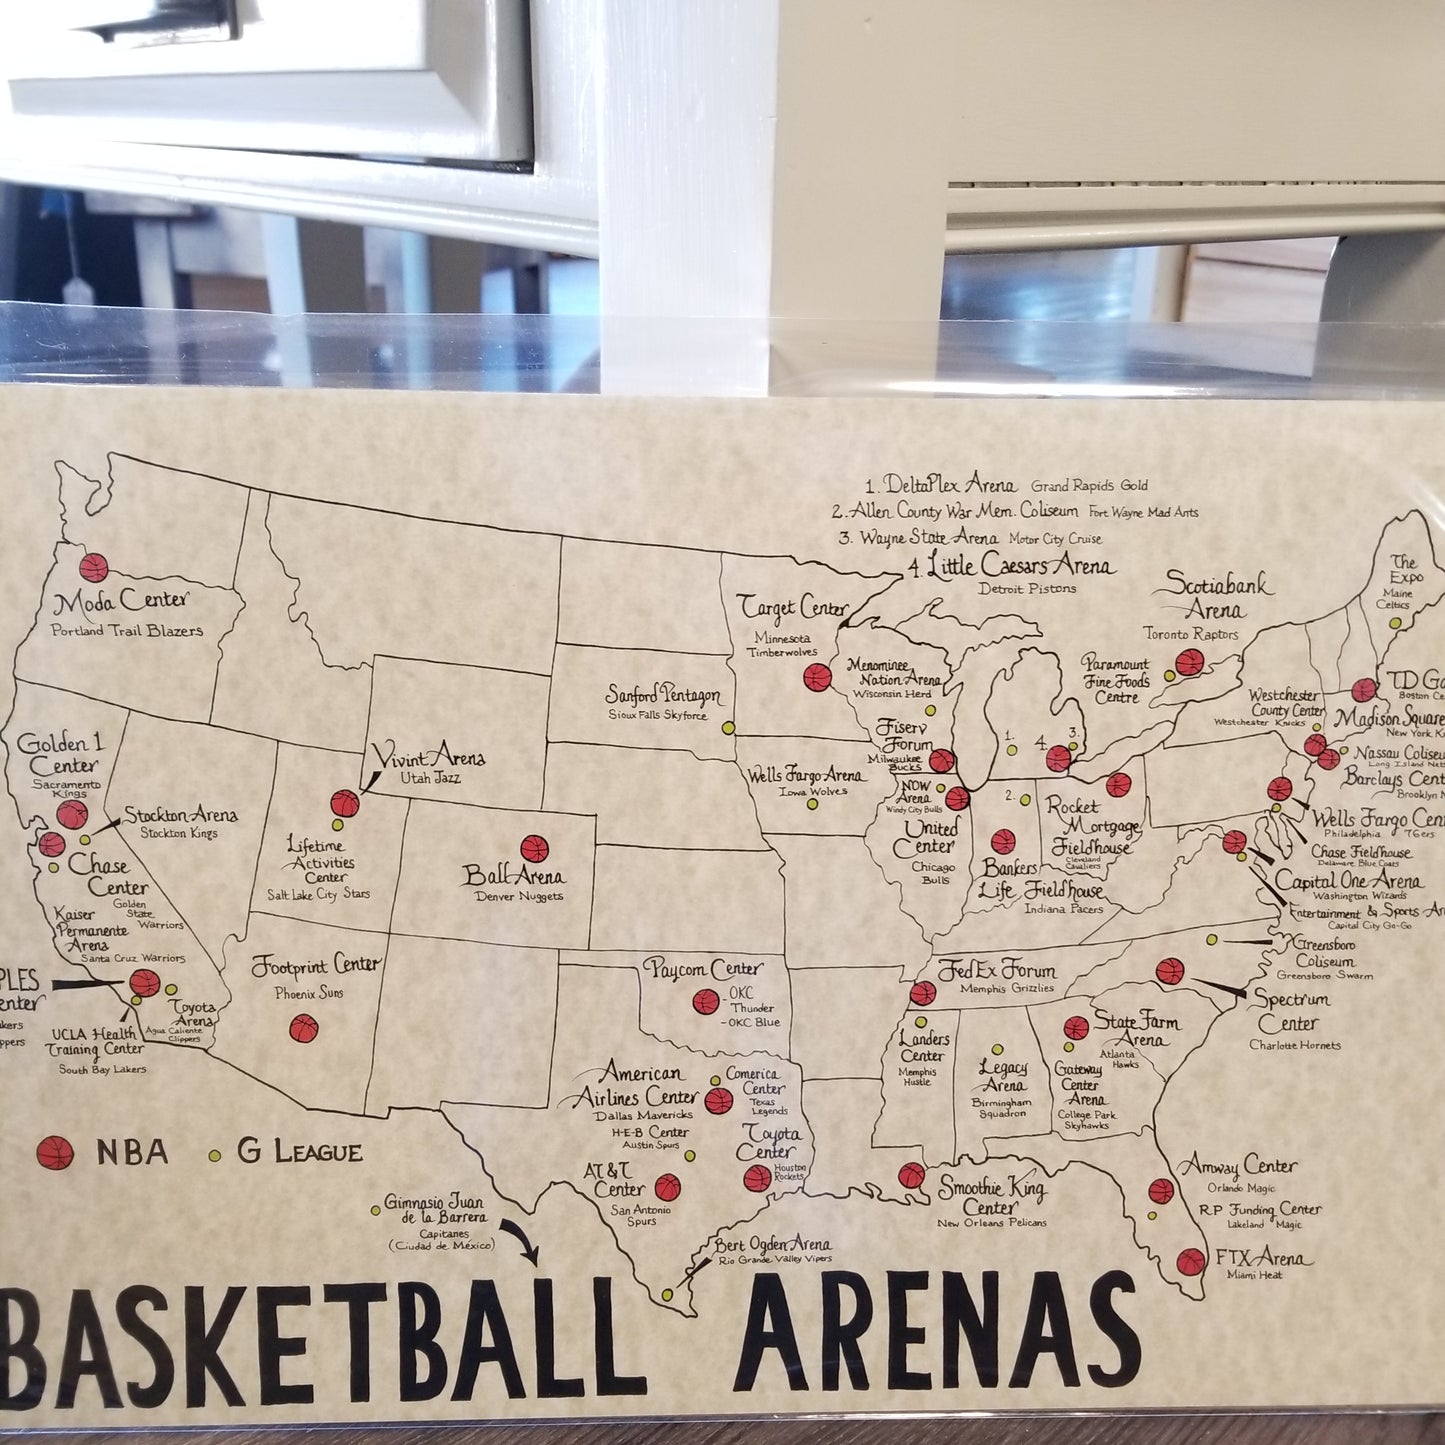 USA Basketball Arenas Map - Handmade